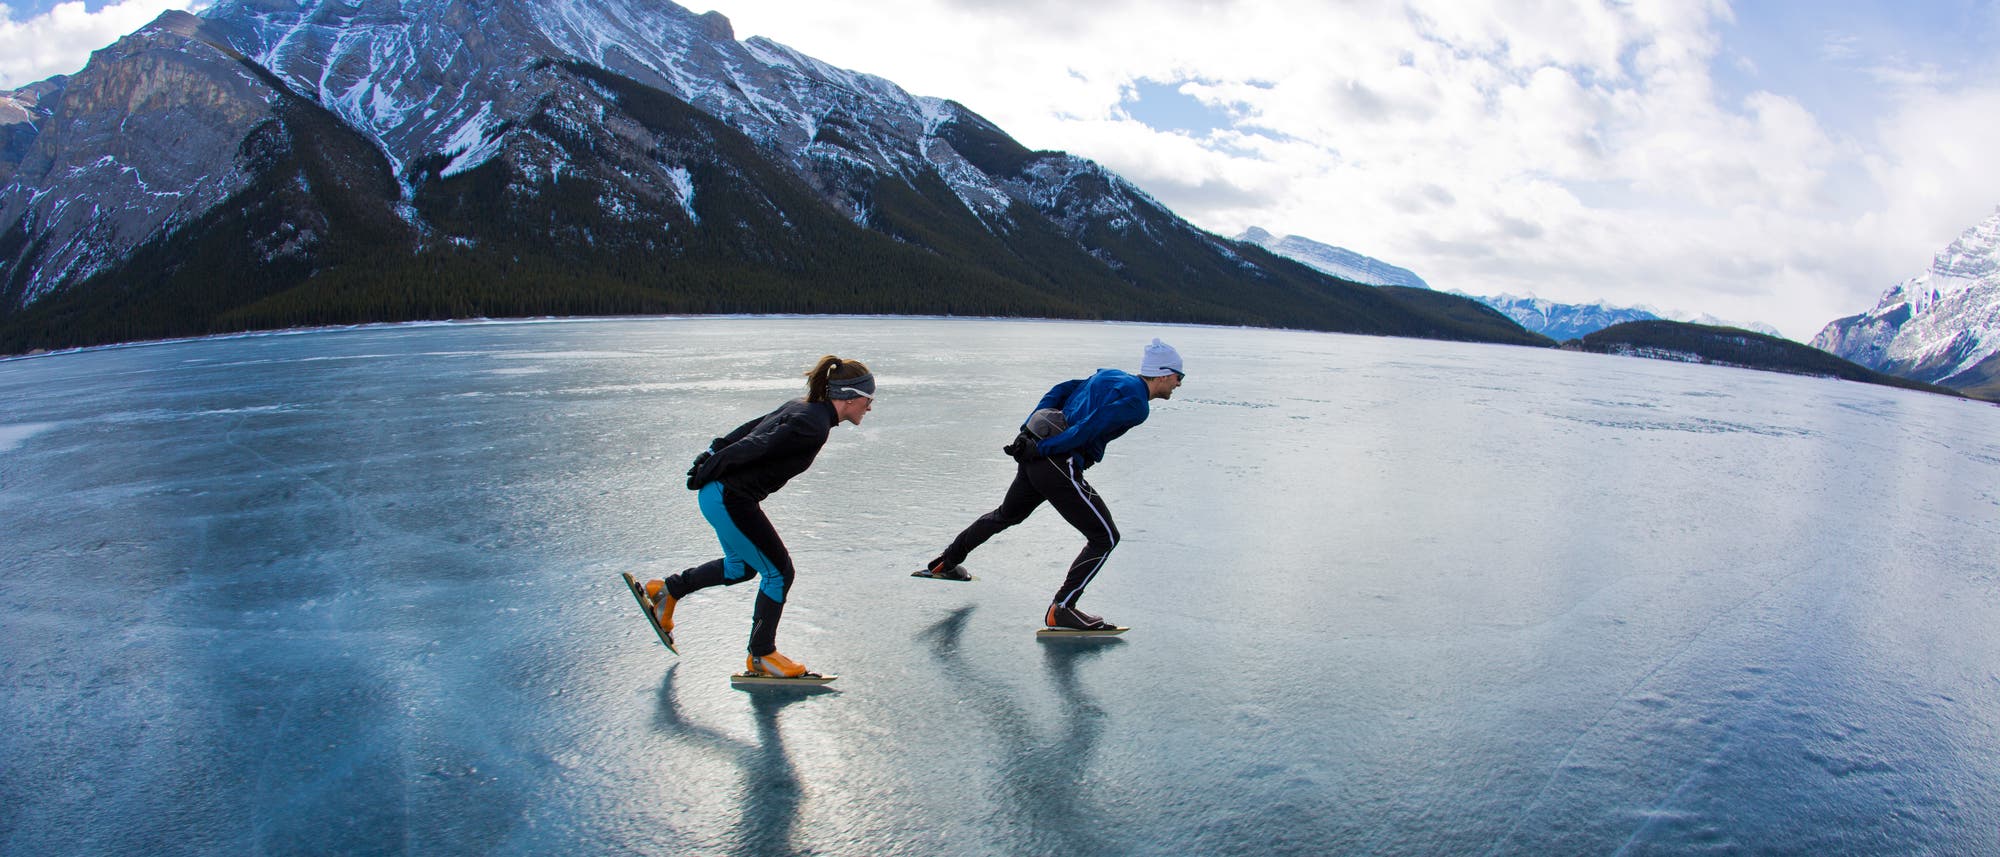 Zwei Schlittschuhläufer gleiten auf einem zugefrorenen See.